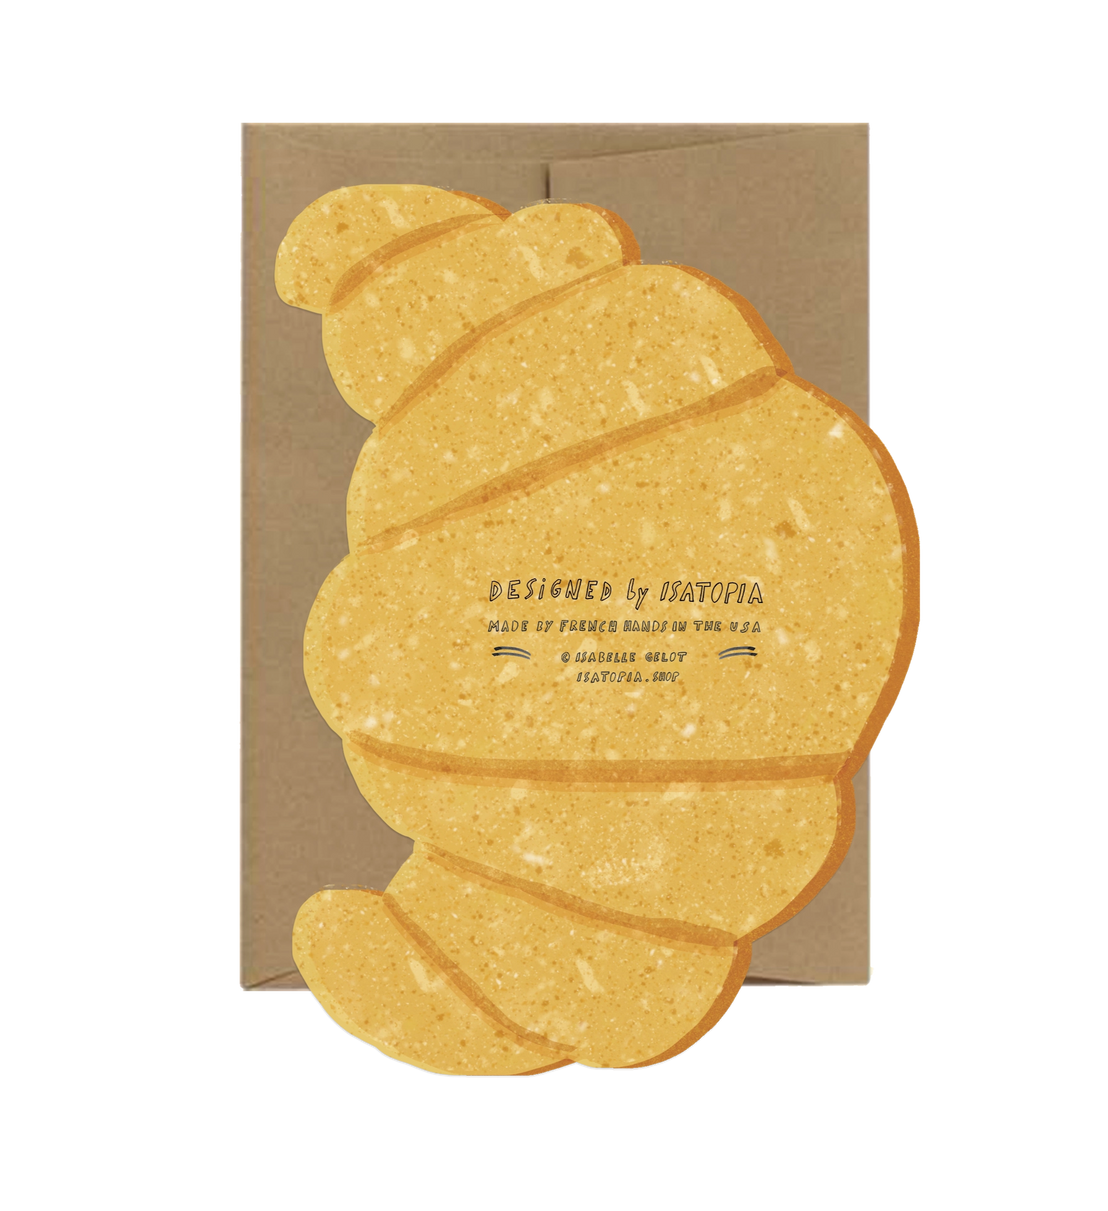 Croissant Card, Isatopia